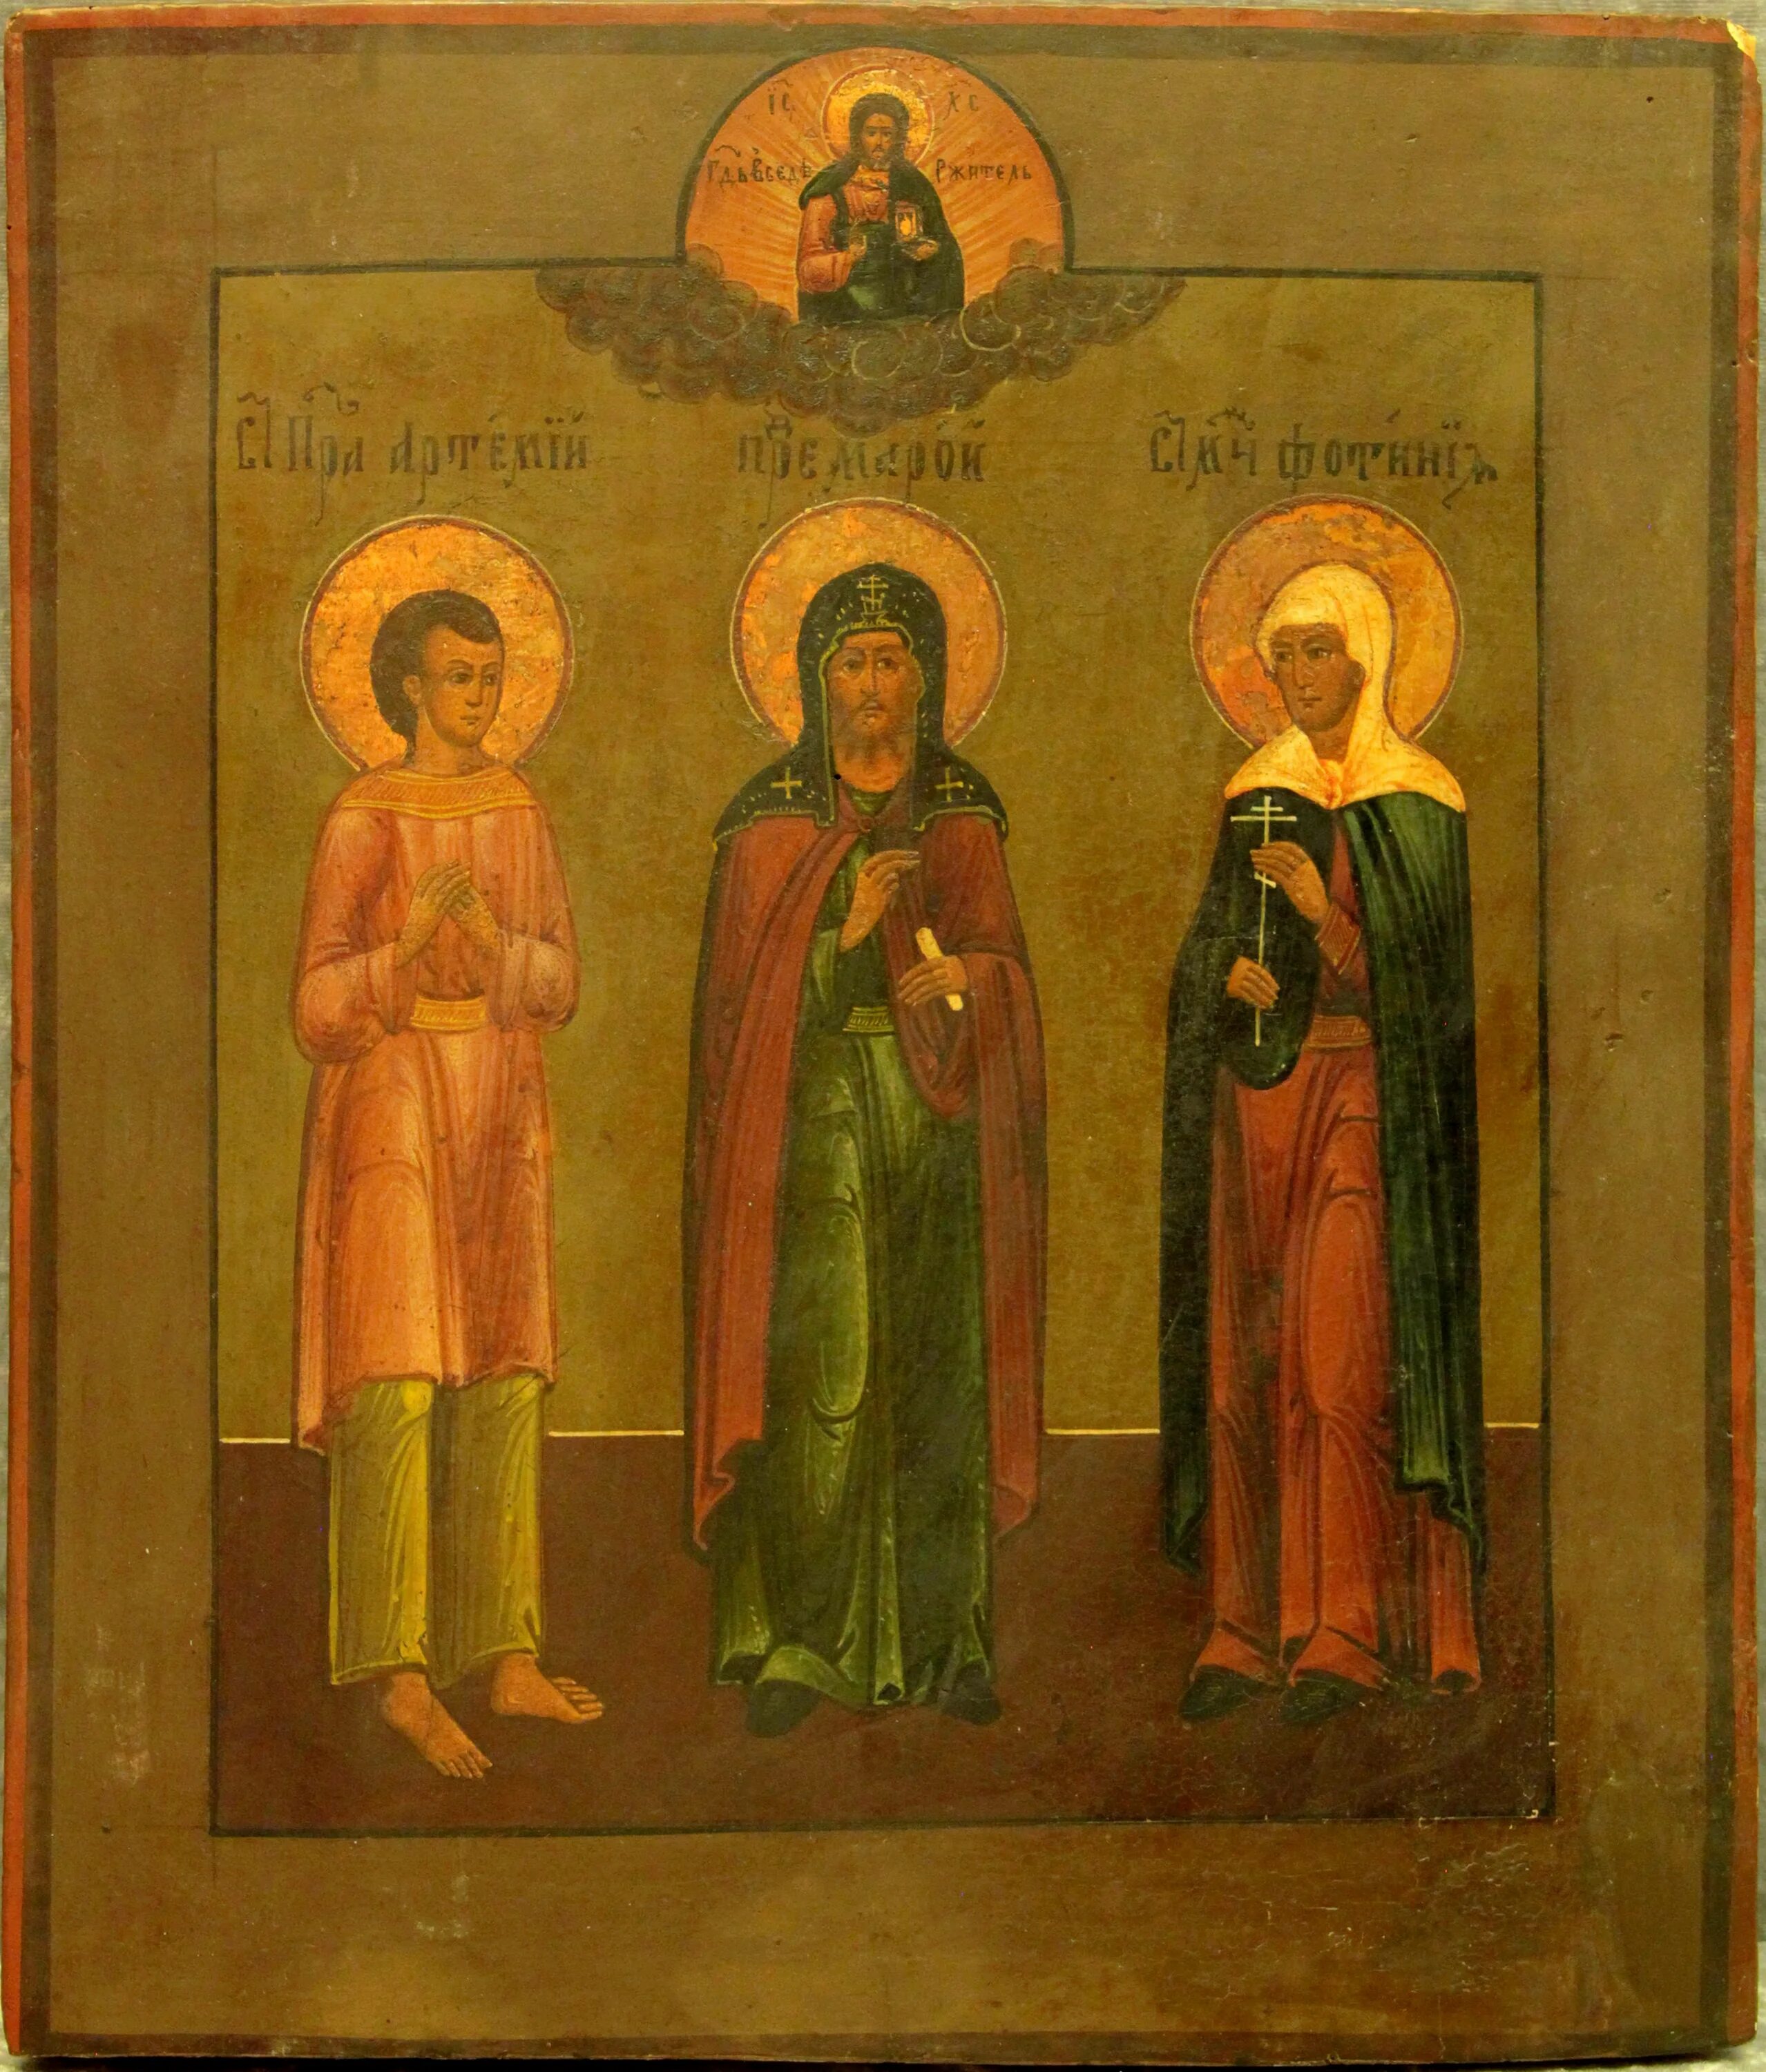 Икона три святителя старинная. Икона с тремя святыми. Икона с изображением трех святых. Иконы с двумя святыми